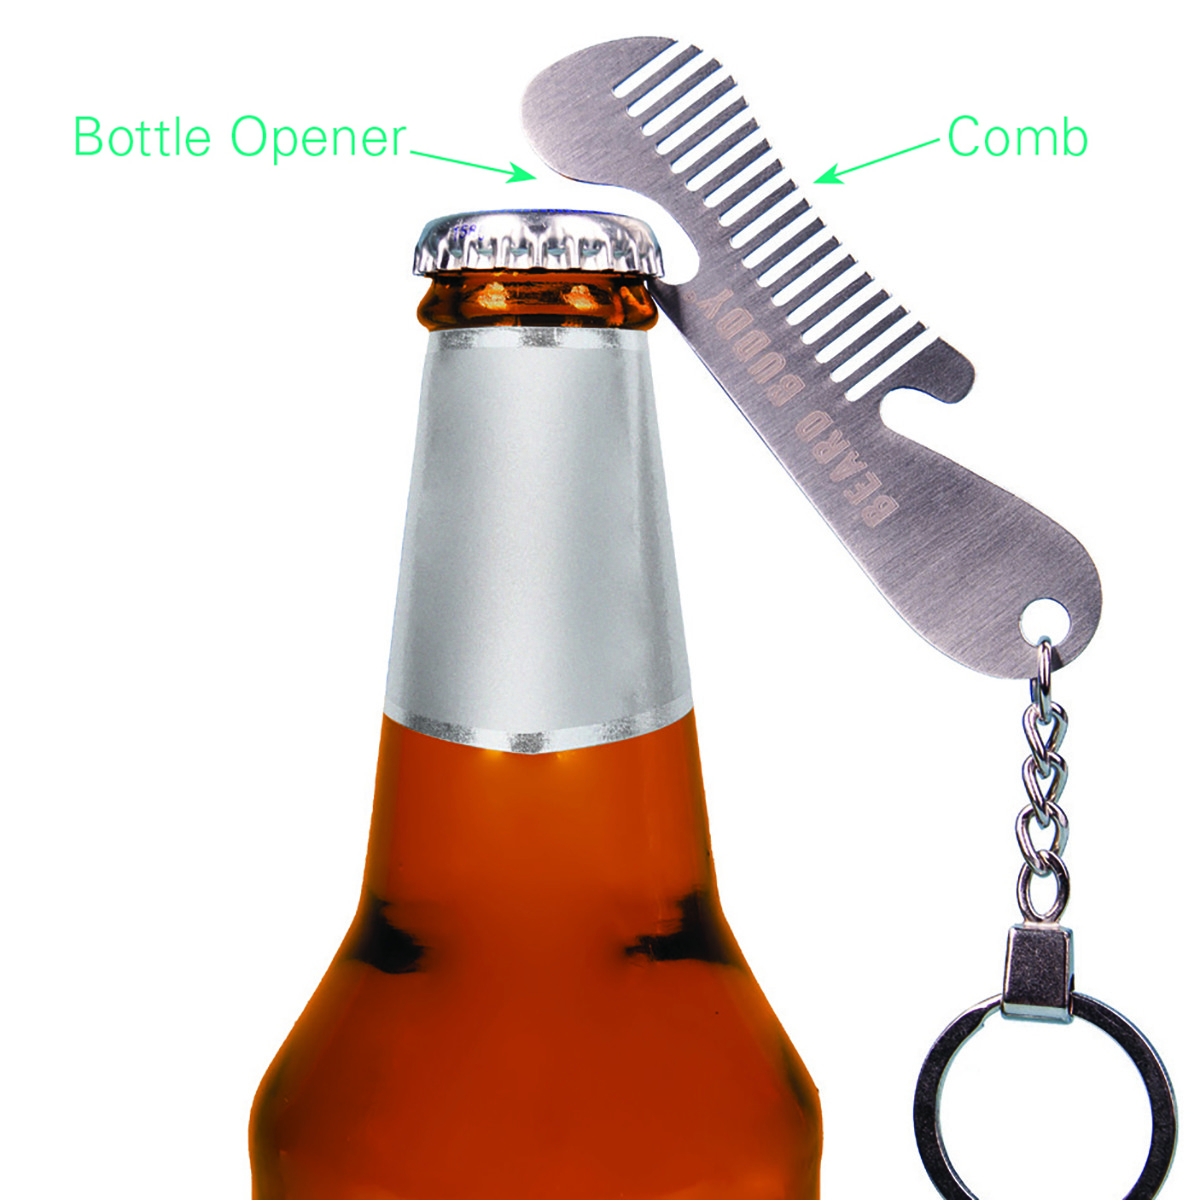 Beer Quote Bundle, Funny Beer Quotes, Beer Bottle Opener Keychain